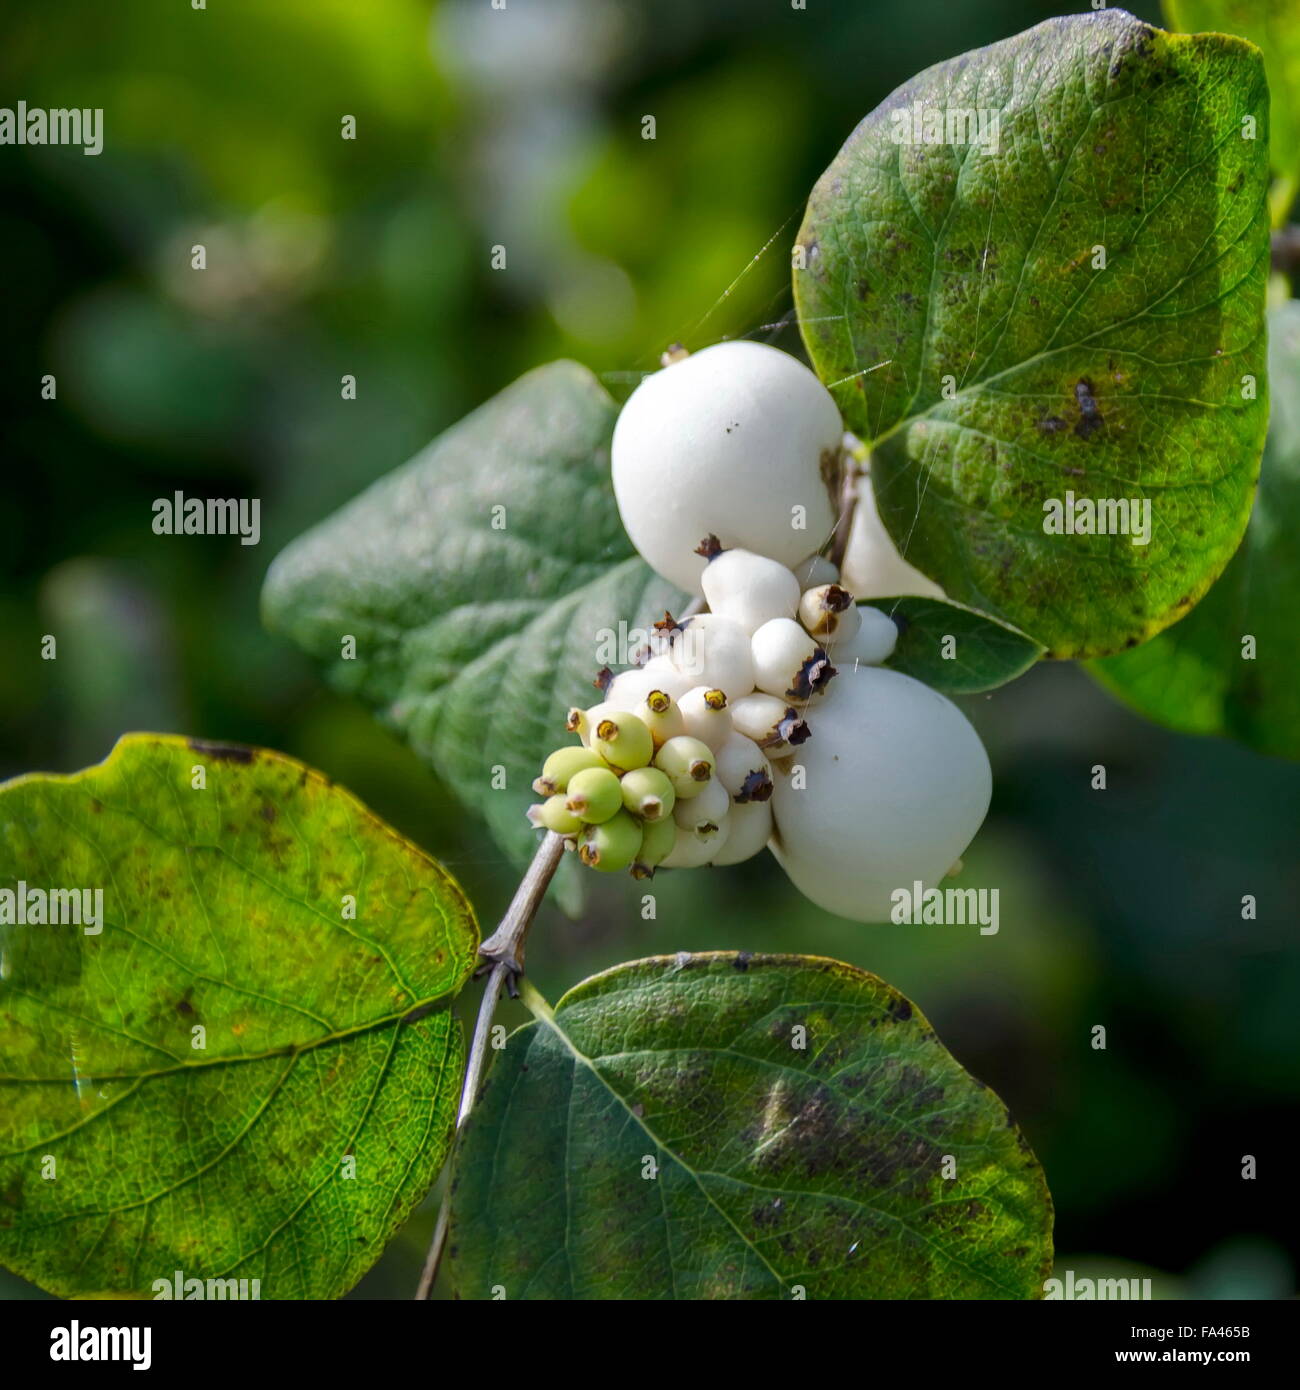 Snowberry albus shrub in park, Bulgaria Stock Photo